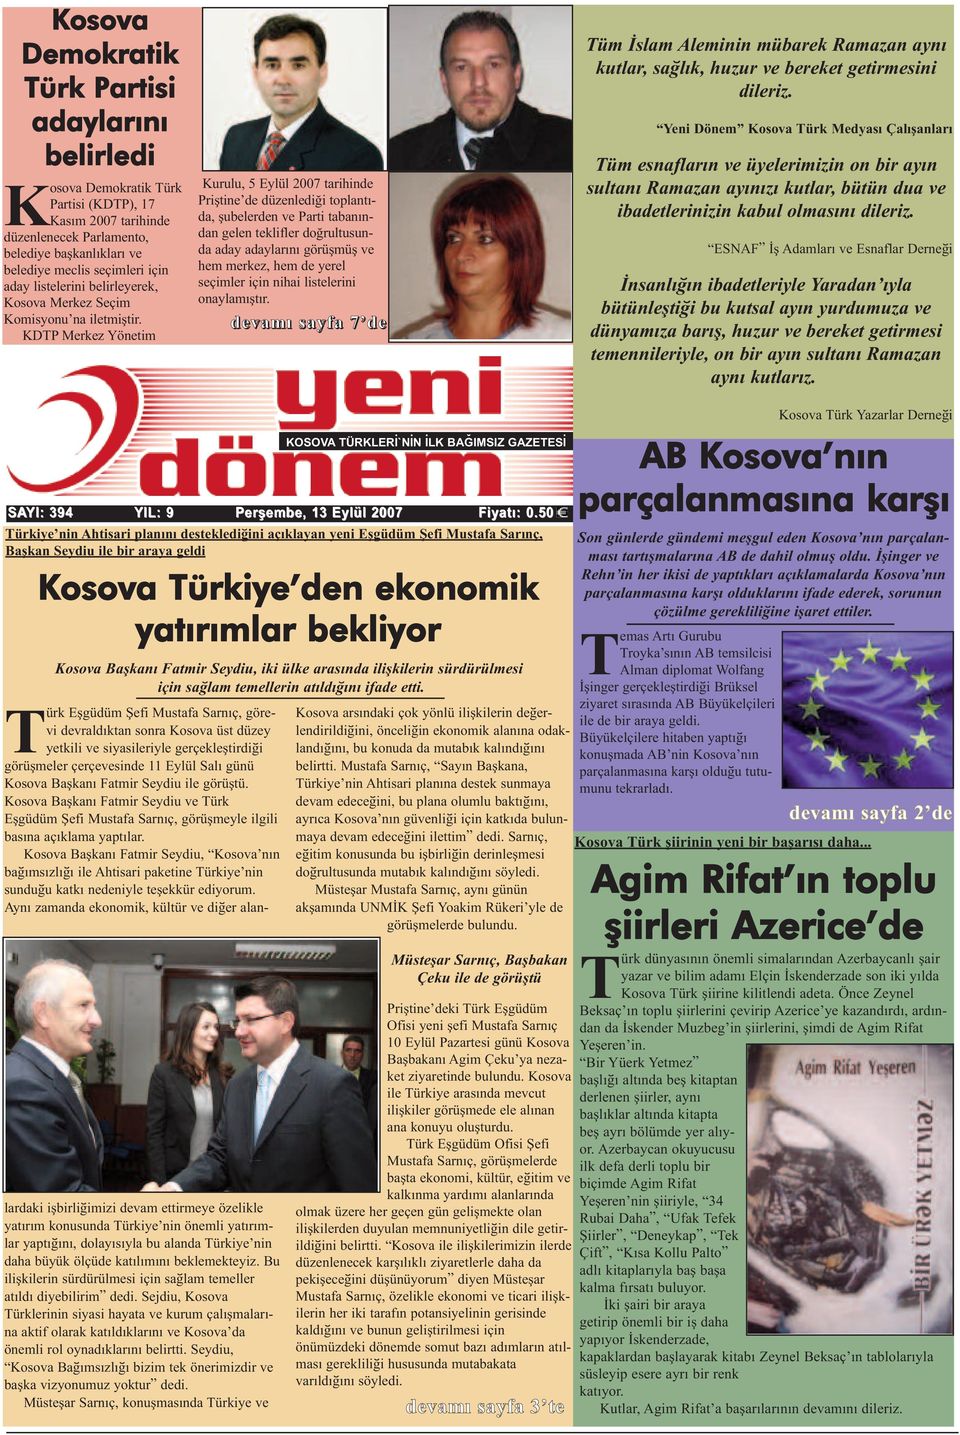 KDTP Merkez Yönetim Kurulu, 5 Eylül 2007 tarihinde Priştine de düzenlediği toplantıda, şubelerden ve Parti tabanından gelen teklifler doğrultusunda aday adaylarını görüşmüş ve hem merkez, hem de